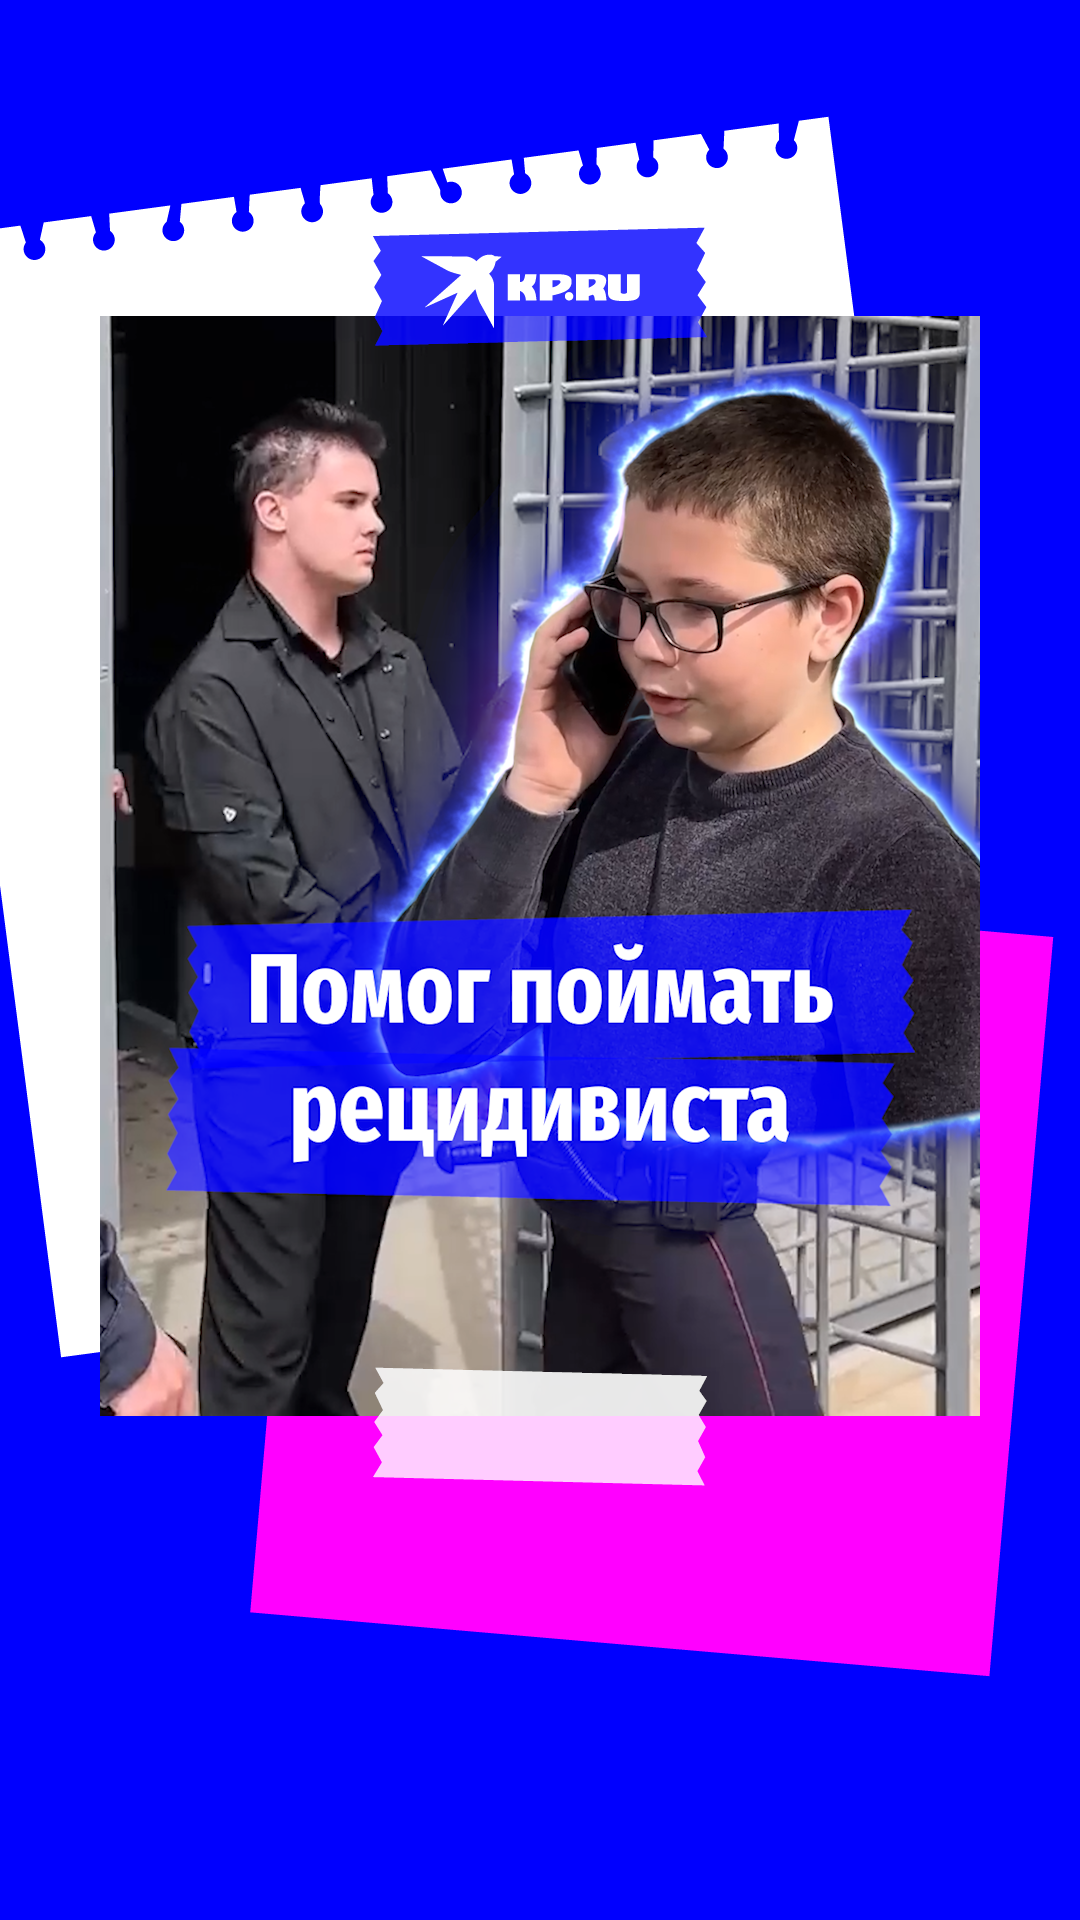 11-летний мальчик из Крыма помог полиции поймать преступника-рецидивиста